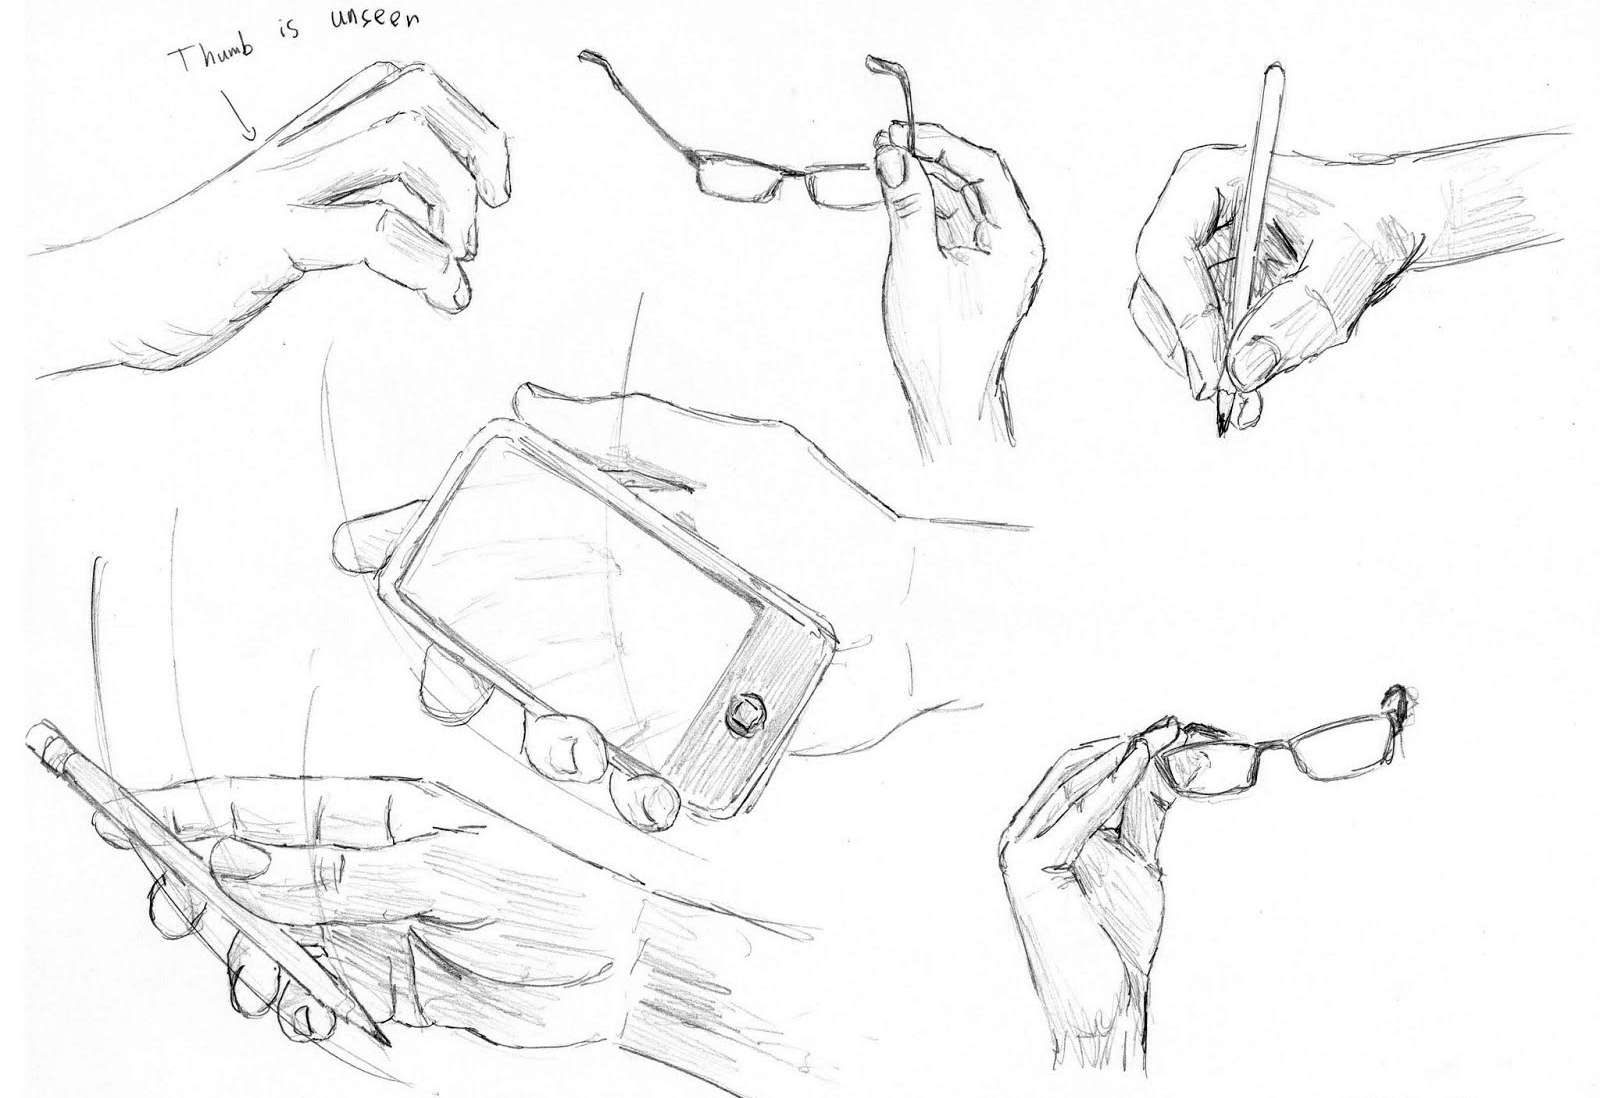 Нарисованная рука с телефоном